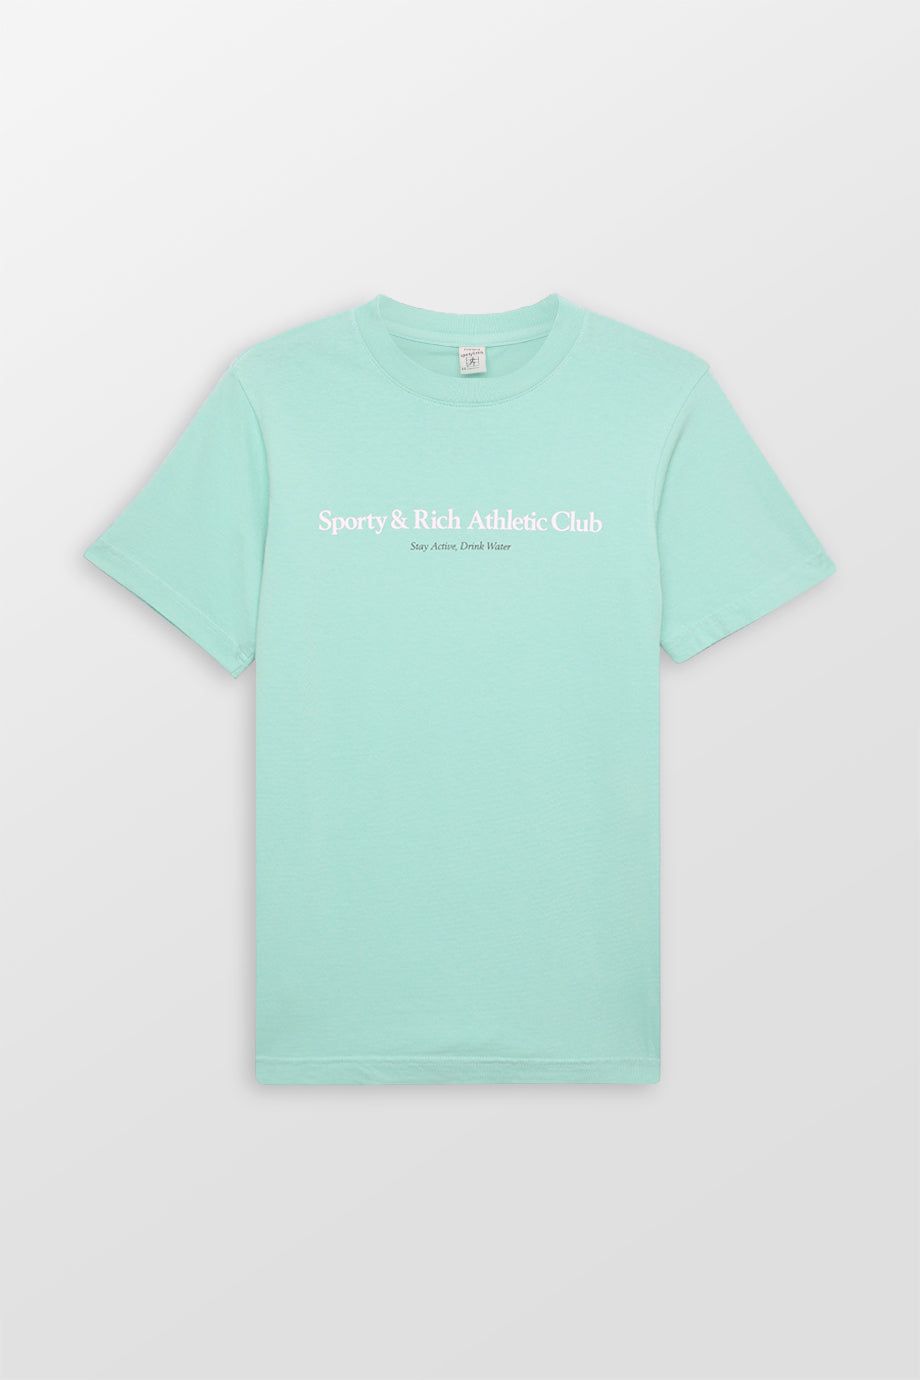 Athletic Club T Shirt